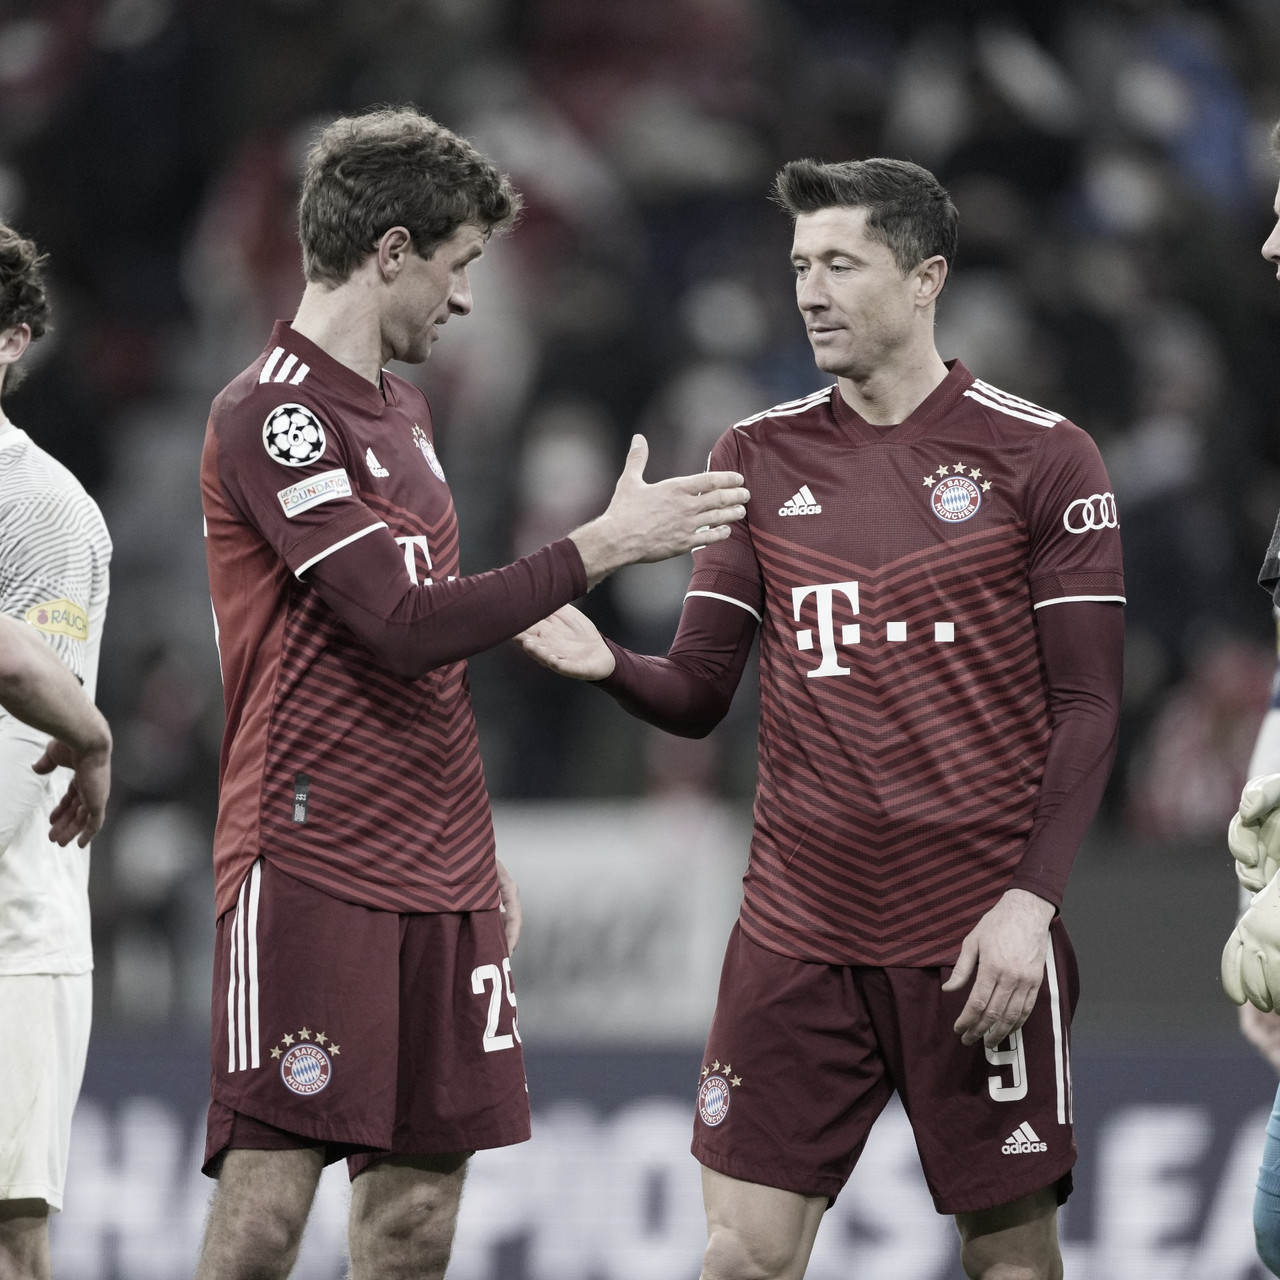 El Bayern aplastó al Salzburgo y avanzó de ronda